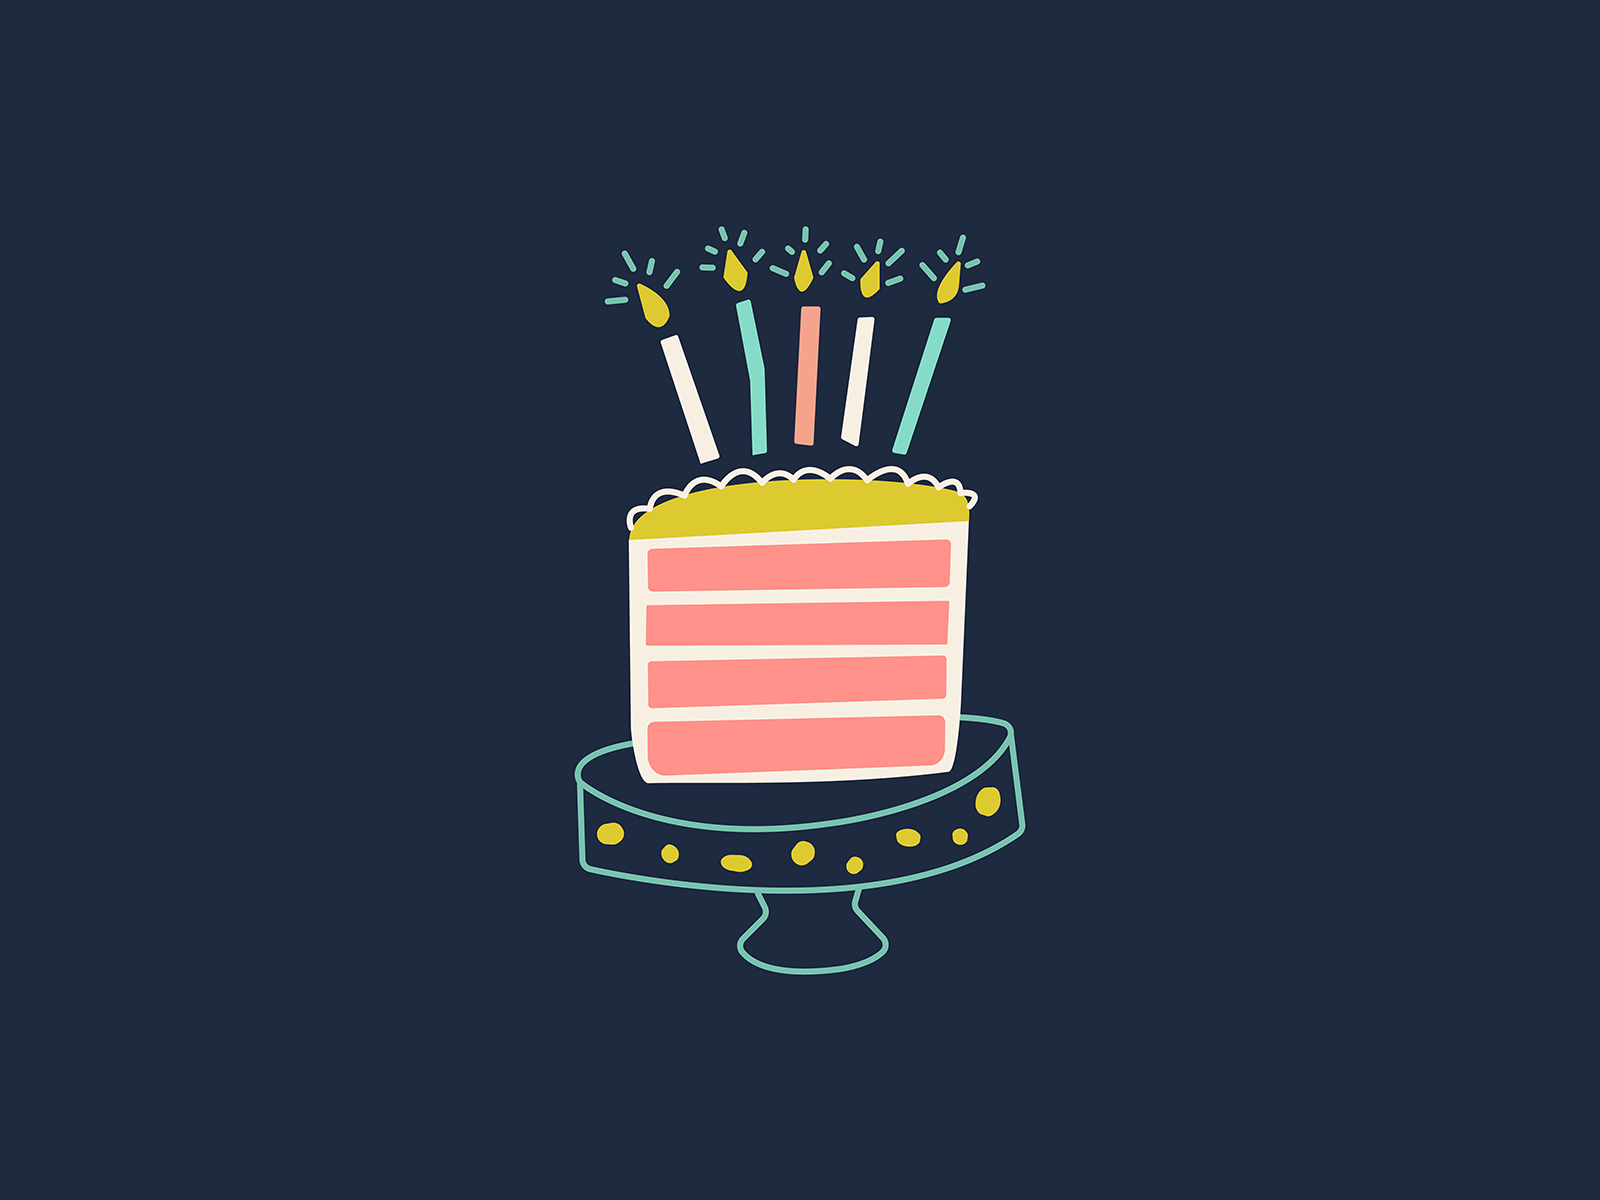 Happy Half Birthday birthday cake celebrate half birthday illustration party